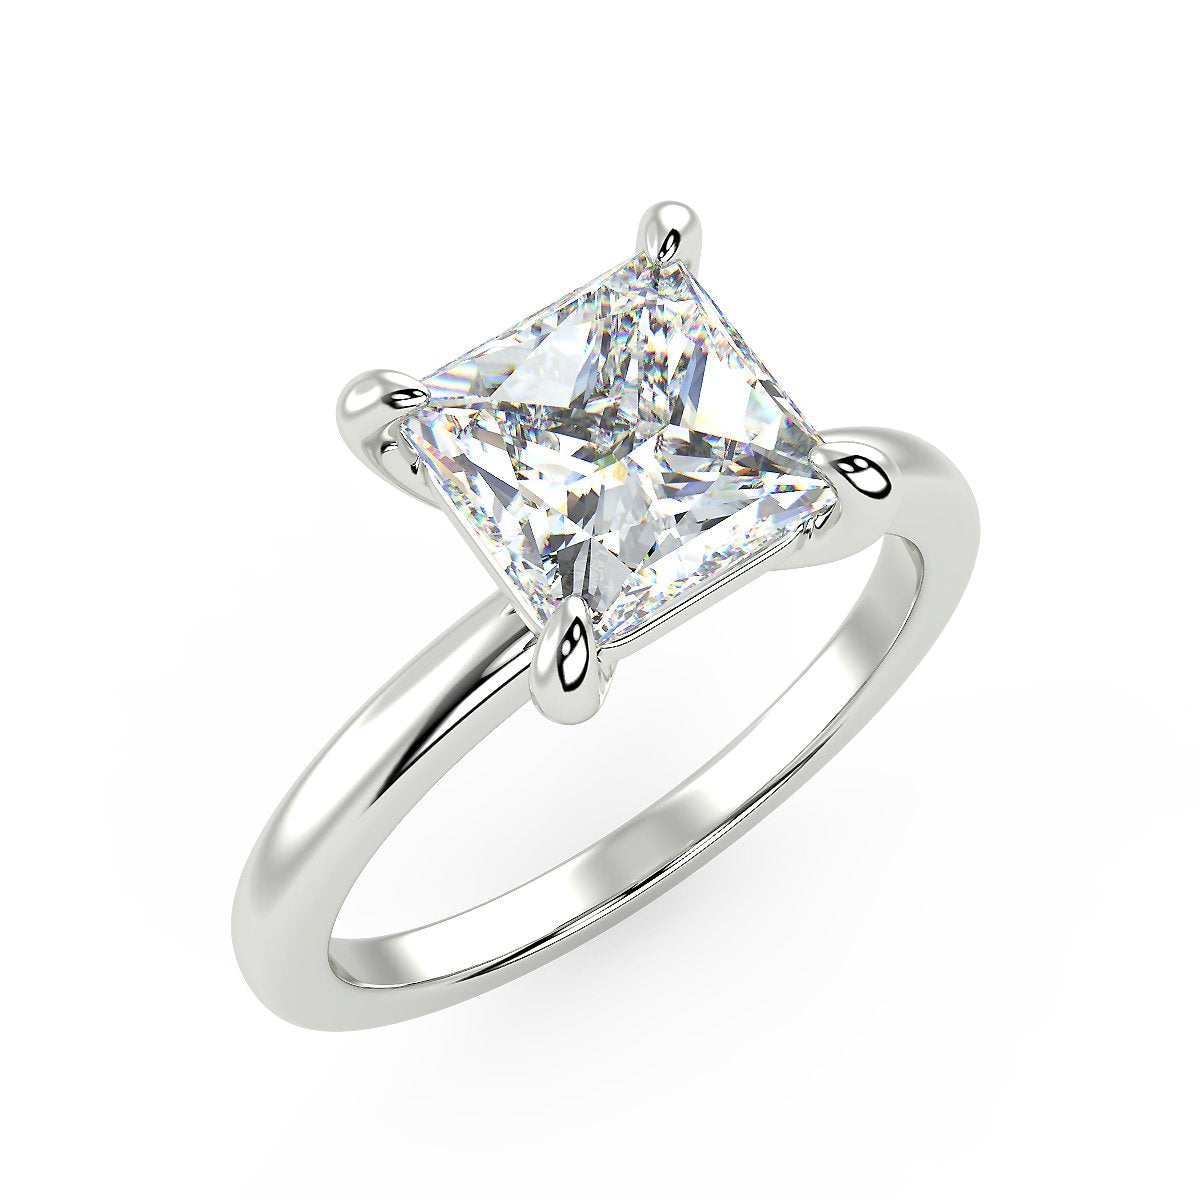 Sirius Princess Engagement Ring in White Gold